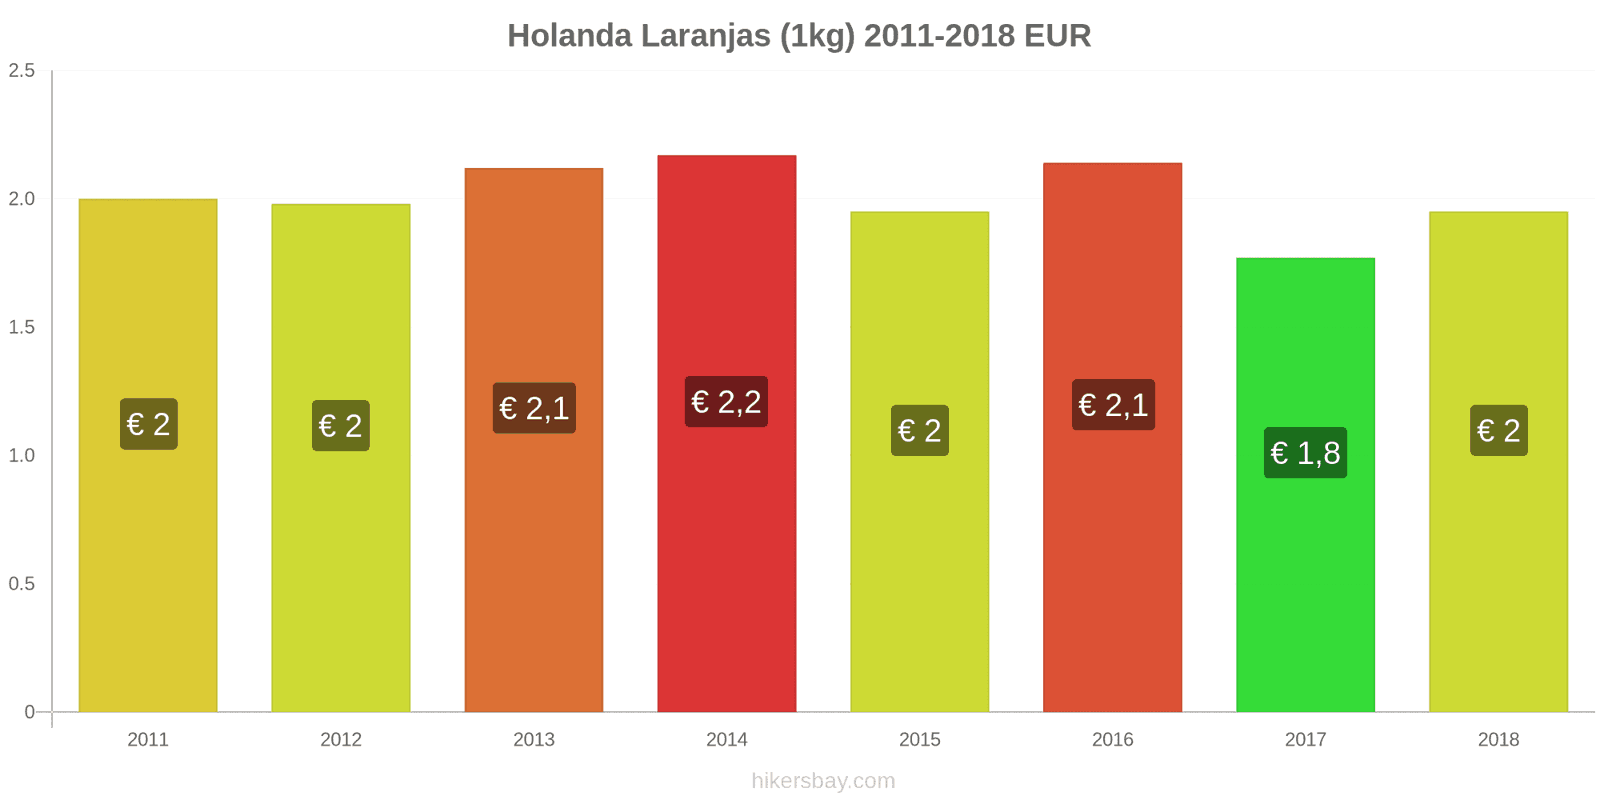 Holanda mudanças de preços Laranjas (1kg) hikersbay.com